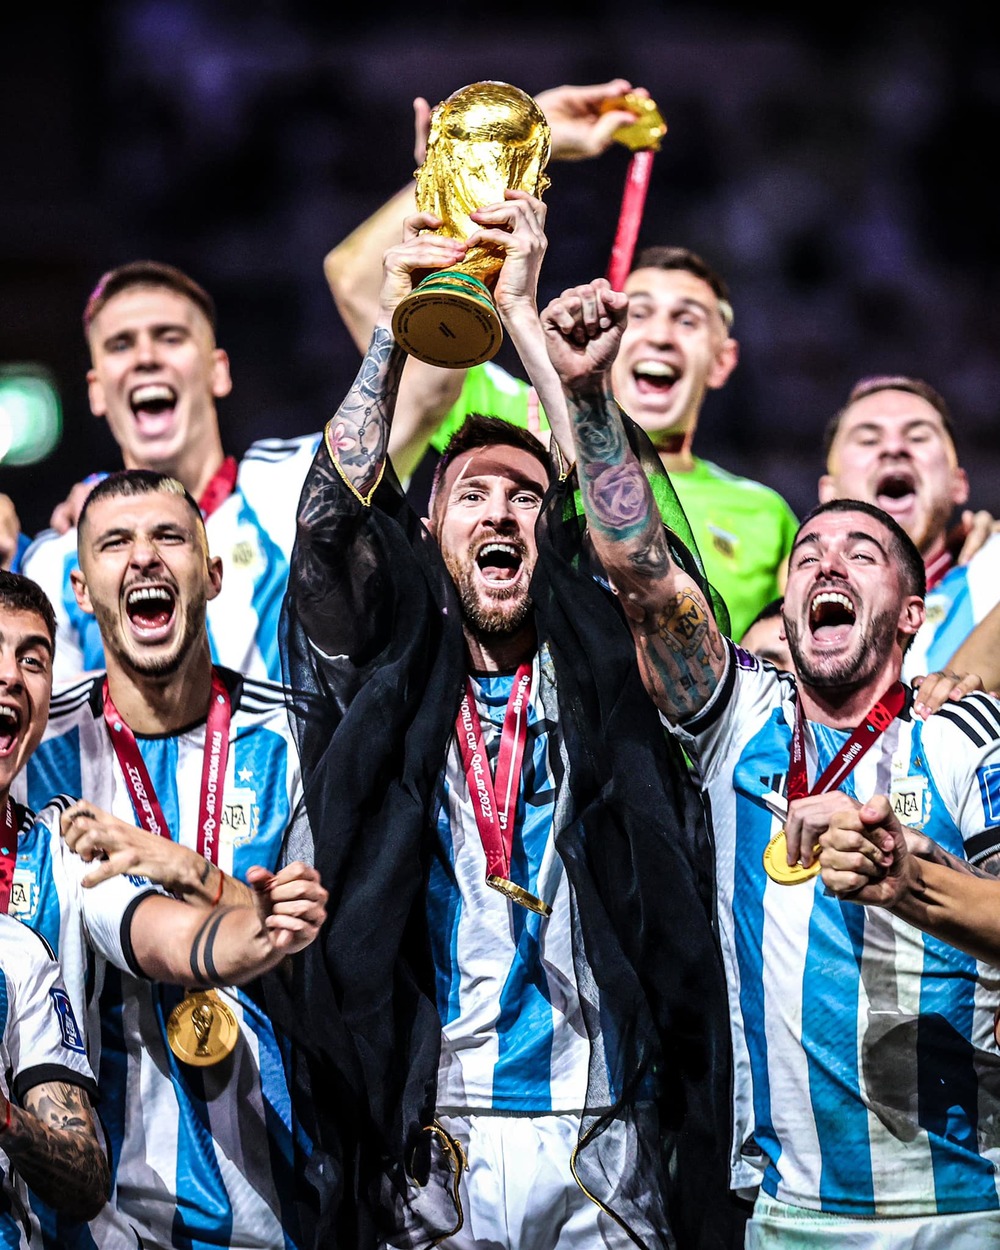 World Cup là giải đấu vô địch danh giá nhất hành tinh, và Messi đã giúp đội tuyển Argentina giành chiến thắng tại đây. Hãy xem hình ảnh này để cùng xem những khoảnh khắc đáng nhớ khi Messi và tuyển Argentina vô địch World Cup.